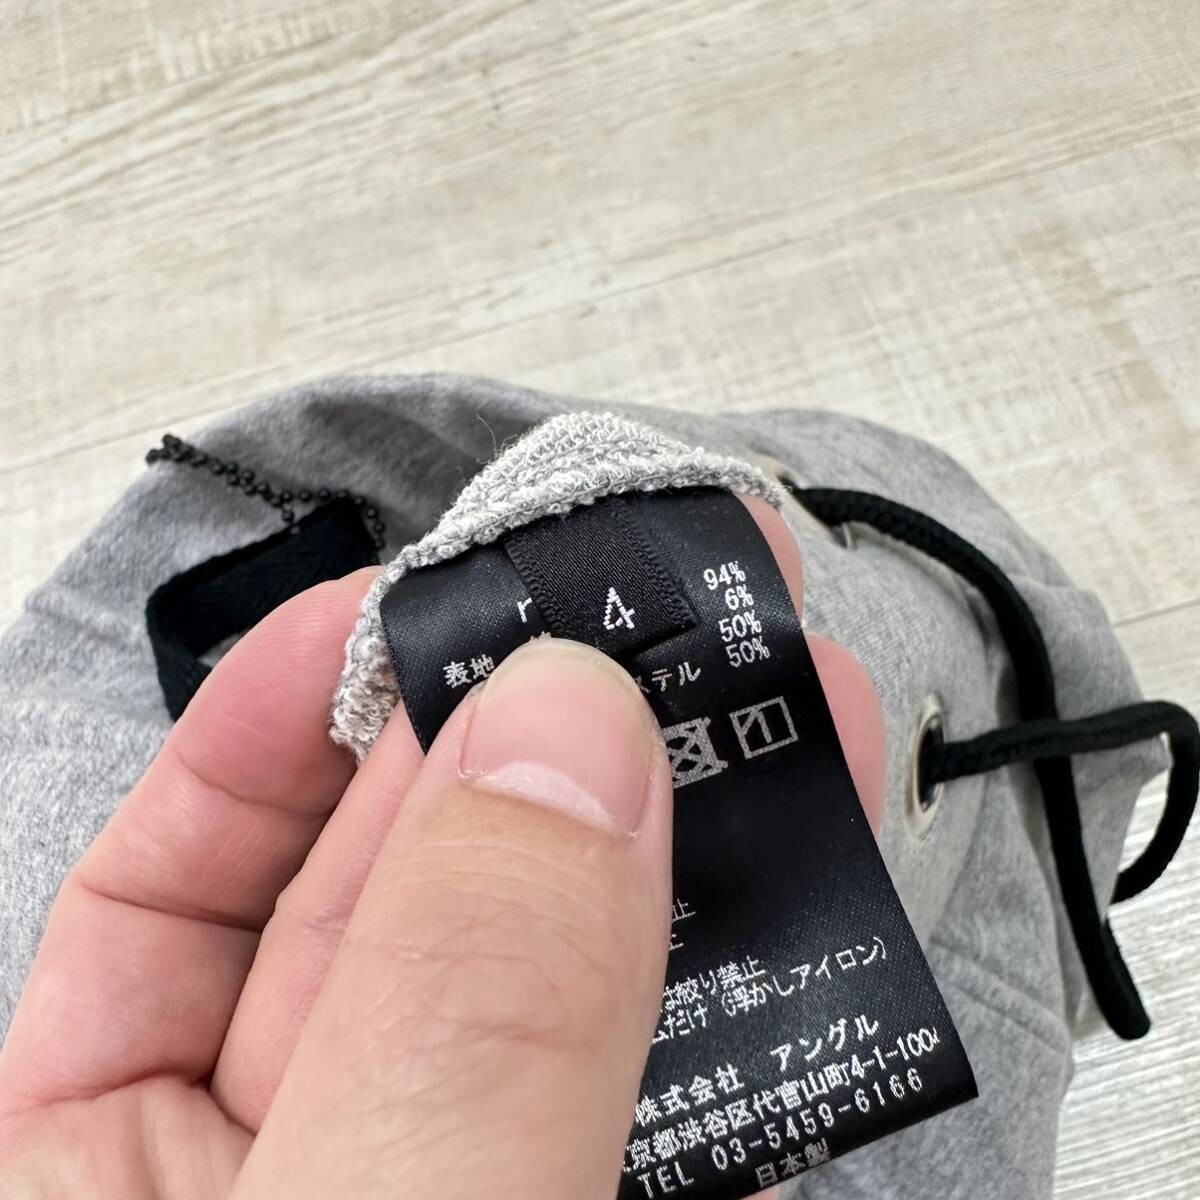  новый товар r LA PROVOCAZIONE ETERNA ripvanwinklea-ru Rip Van Winkle тренировочный Short легкий брюки размер 4 обычная цена 28.000 иен 